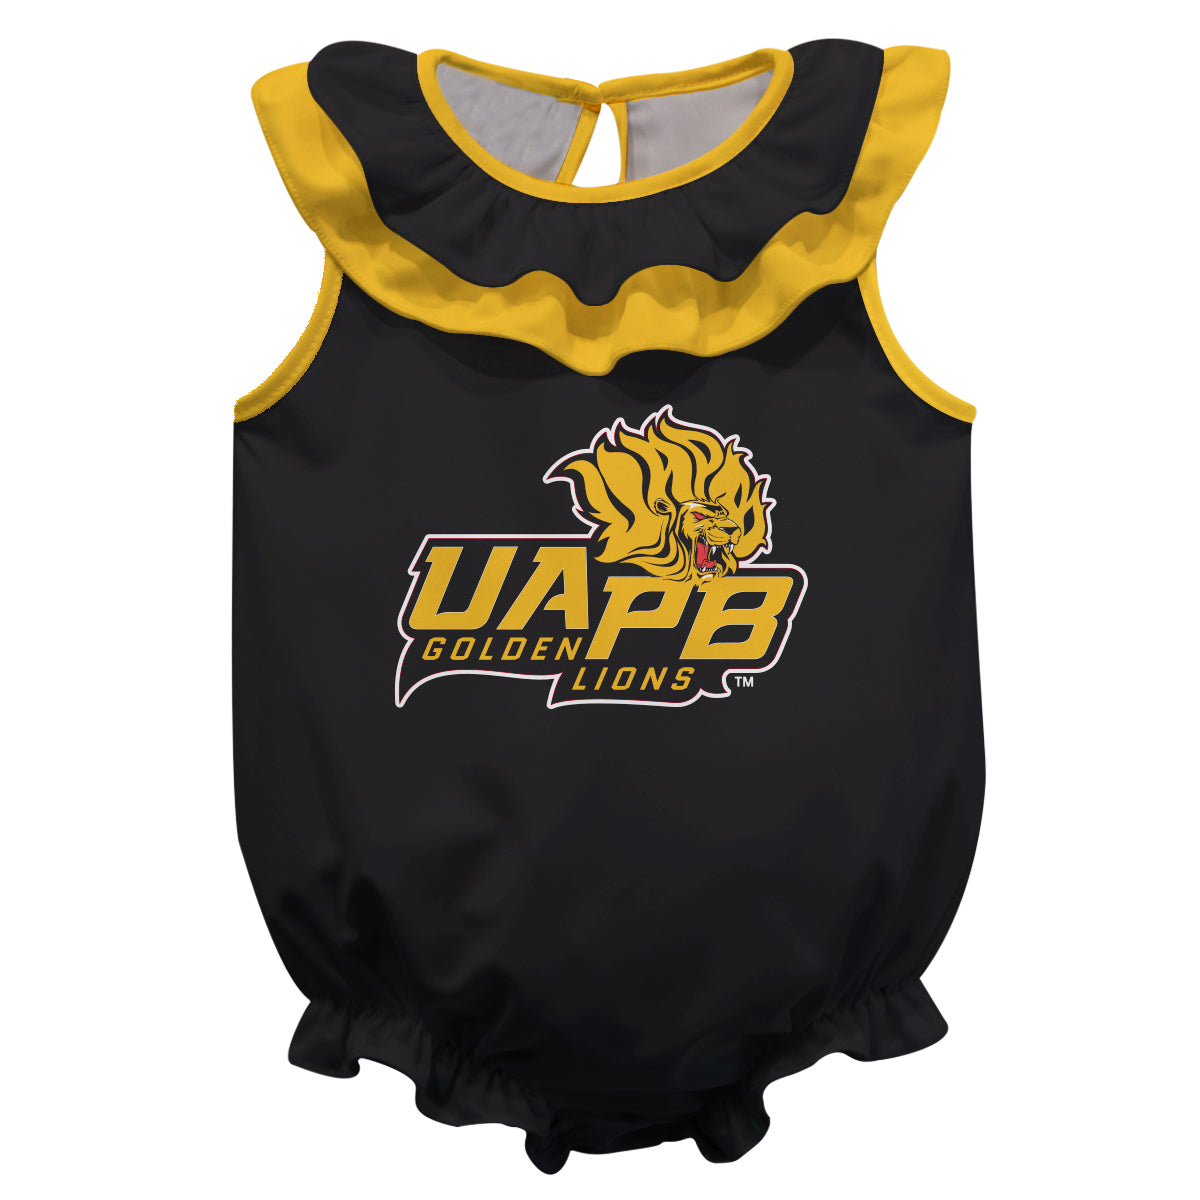 UAPB Golden Lions Black Sleeveless Ruffle One Piece Jumpsuit Mascot Bodysuit by Vive La Fete